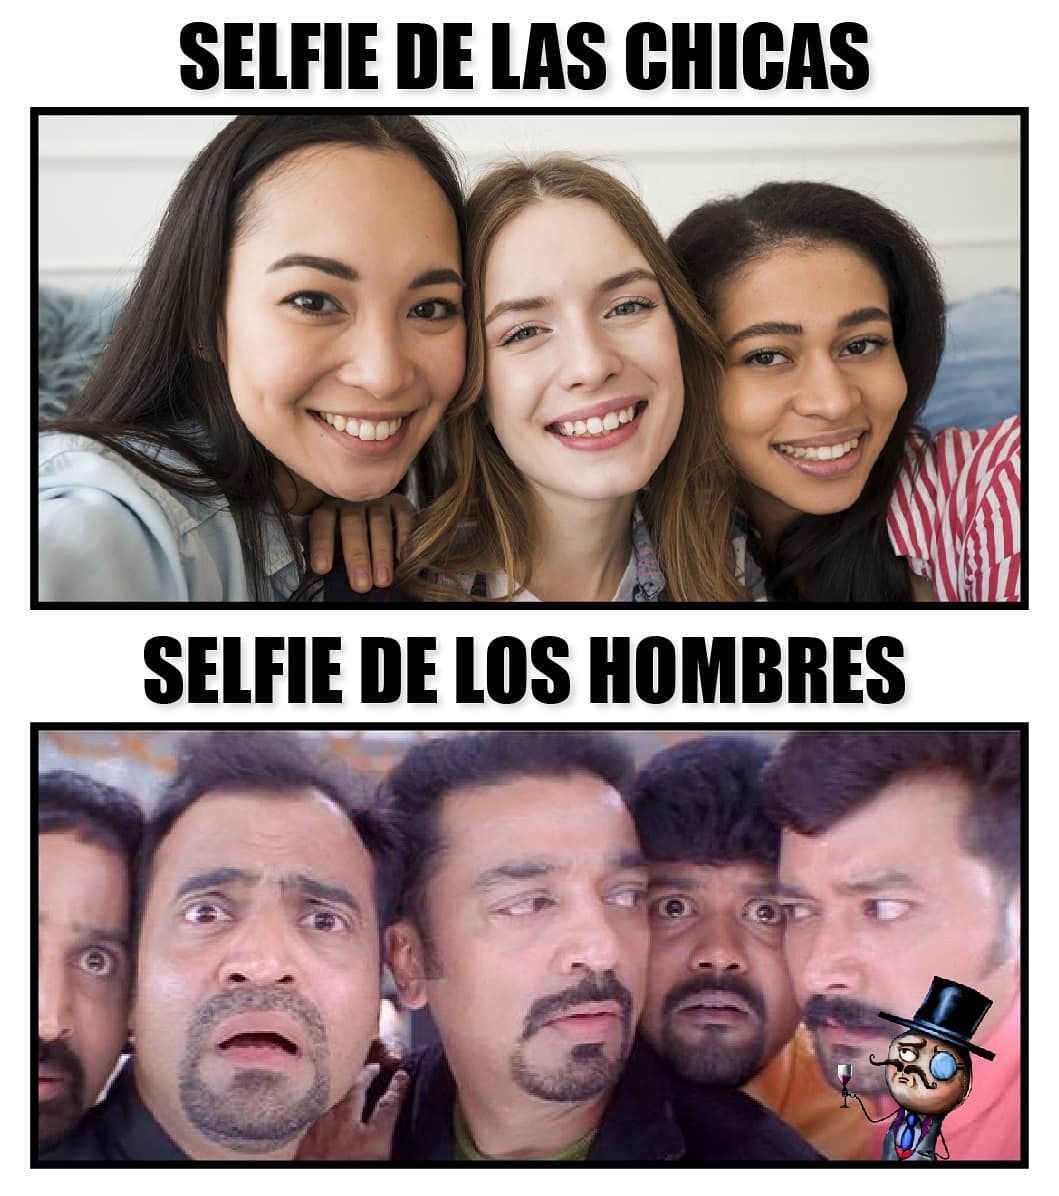 Selfie de las chicas. Selfie de los hombres.